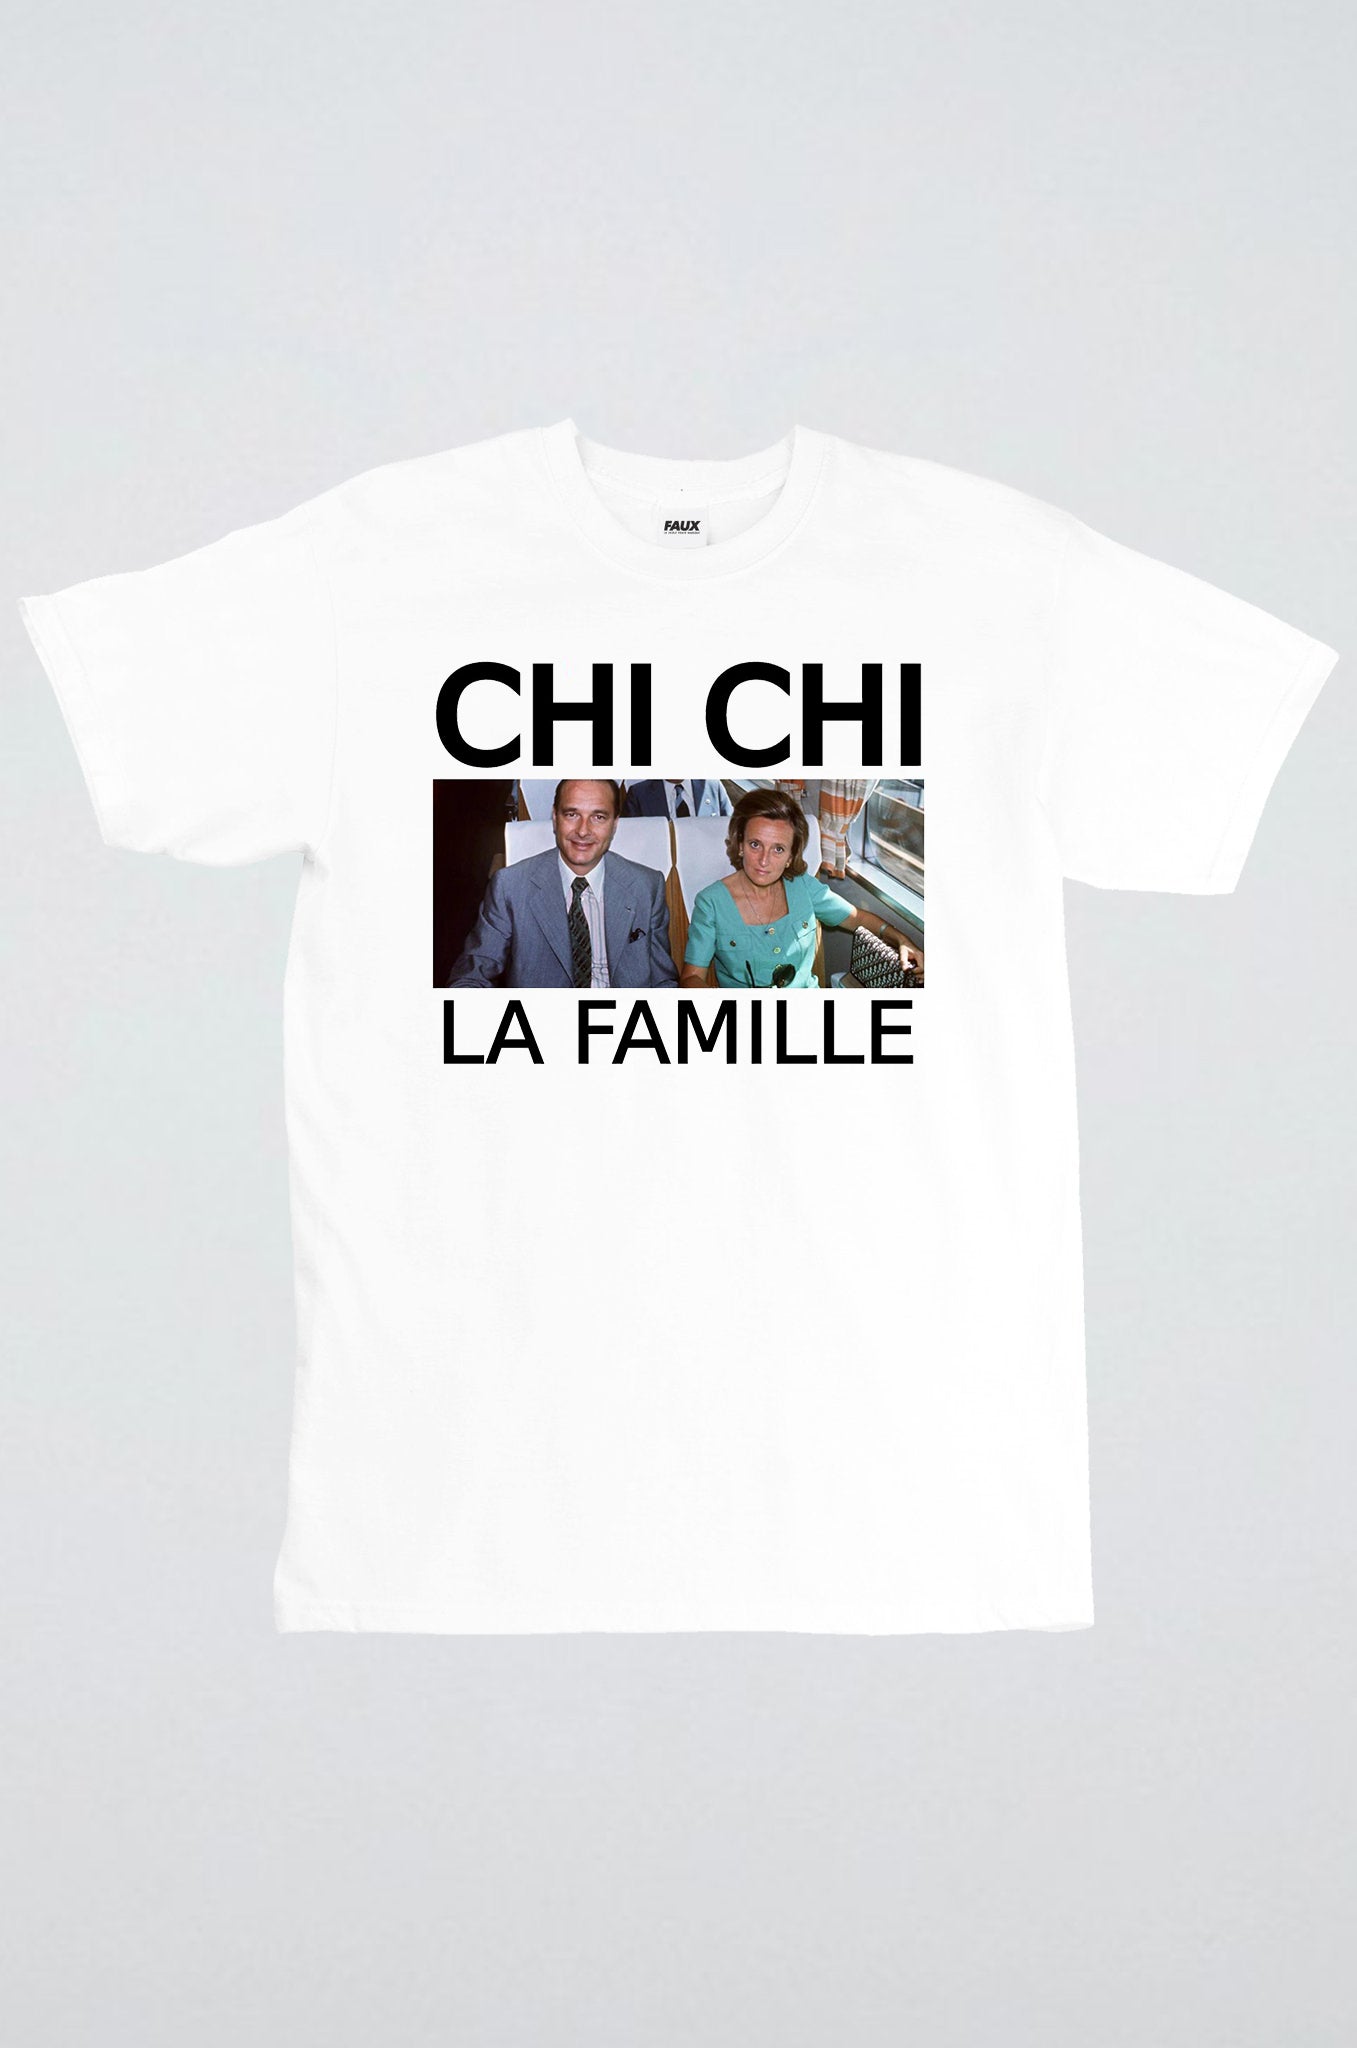 Chichi la famille Chirac